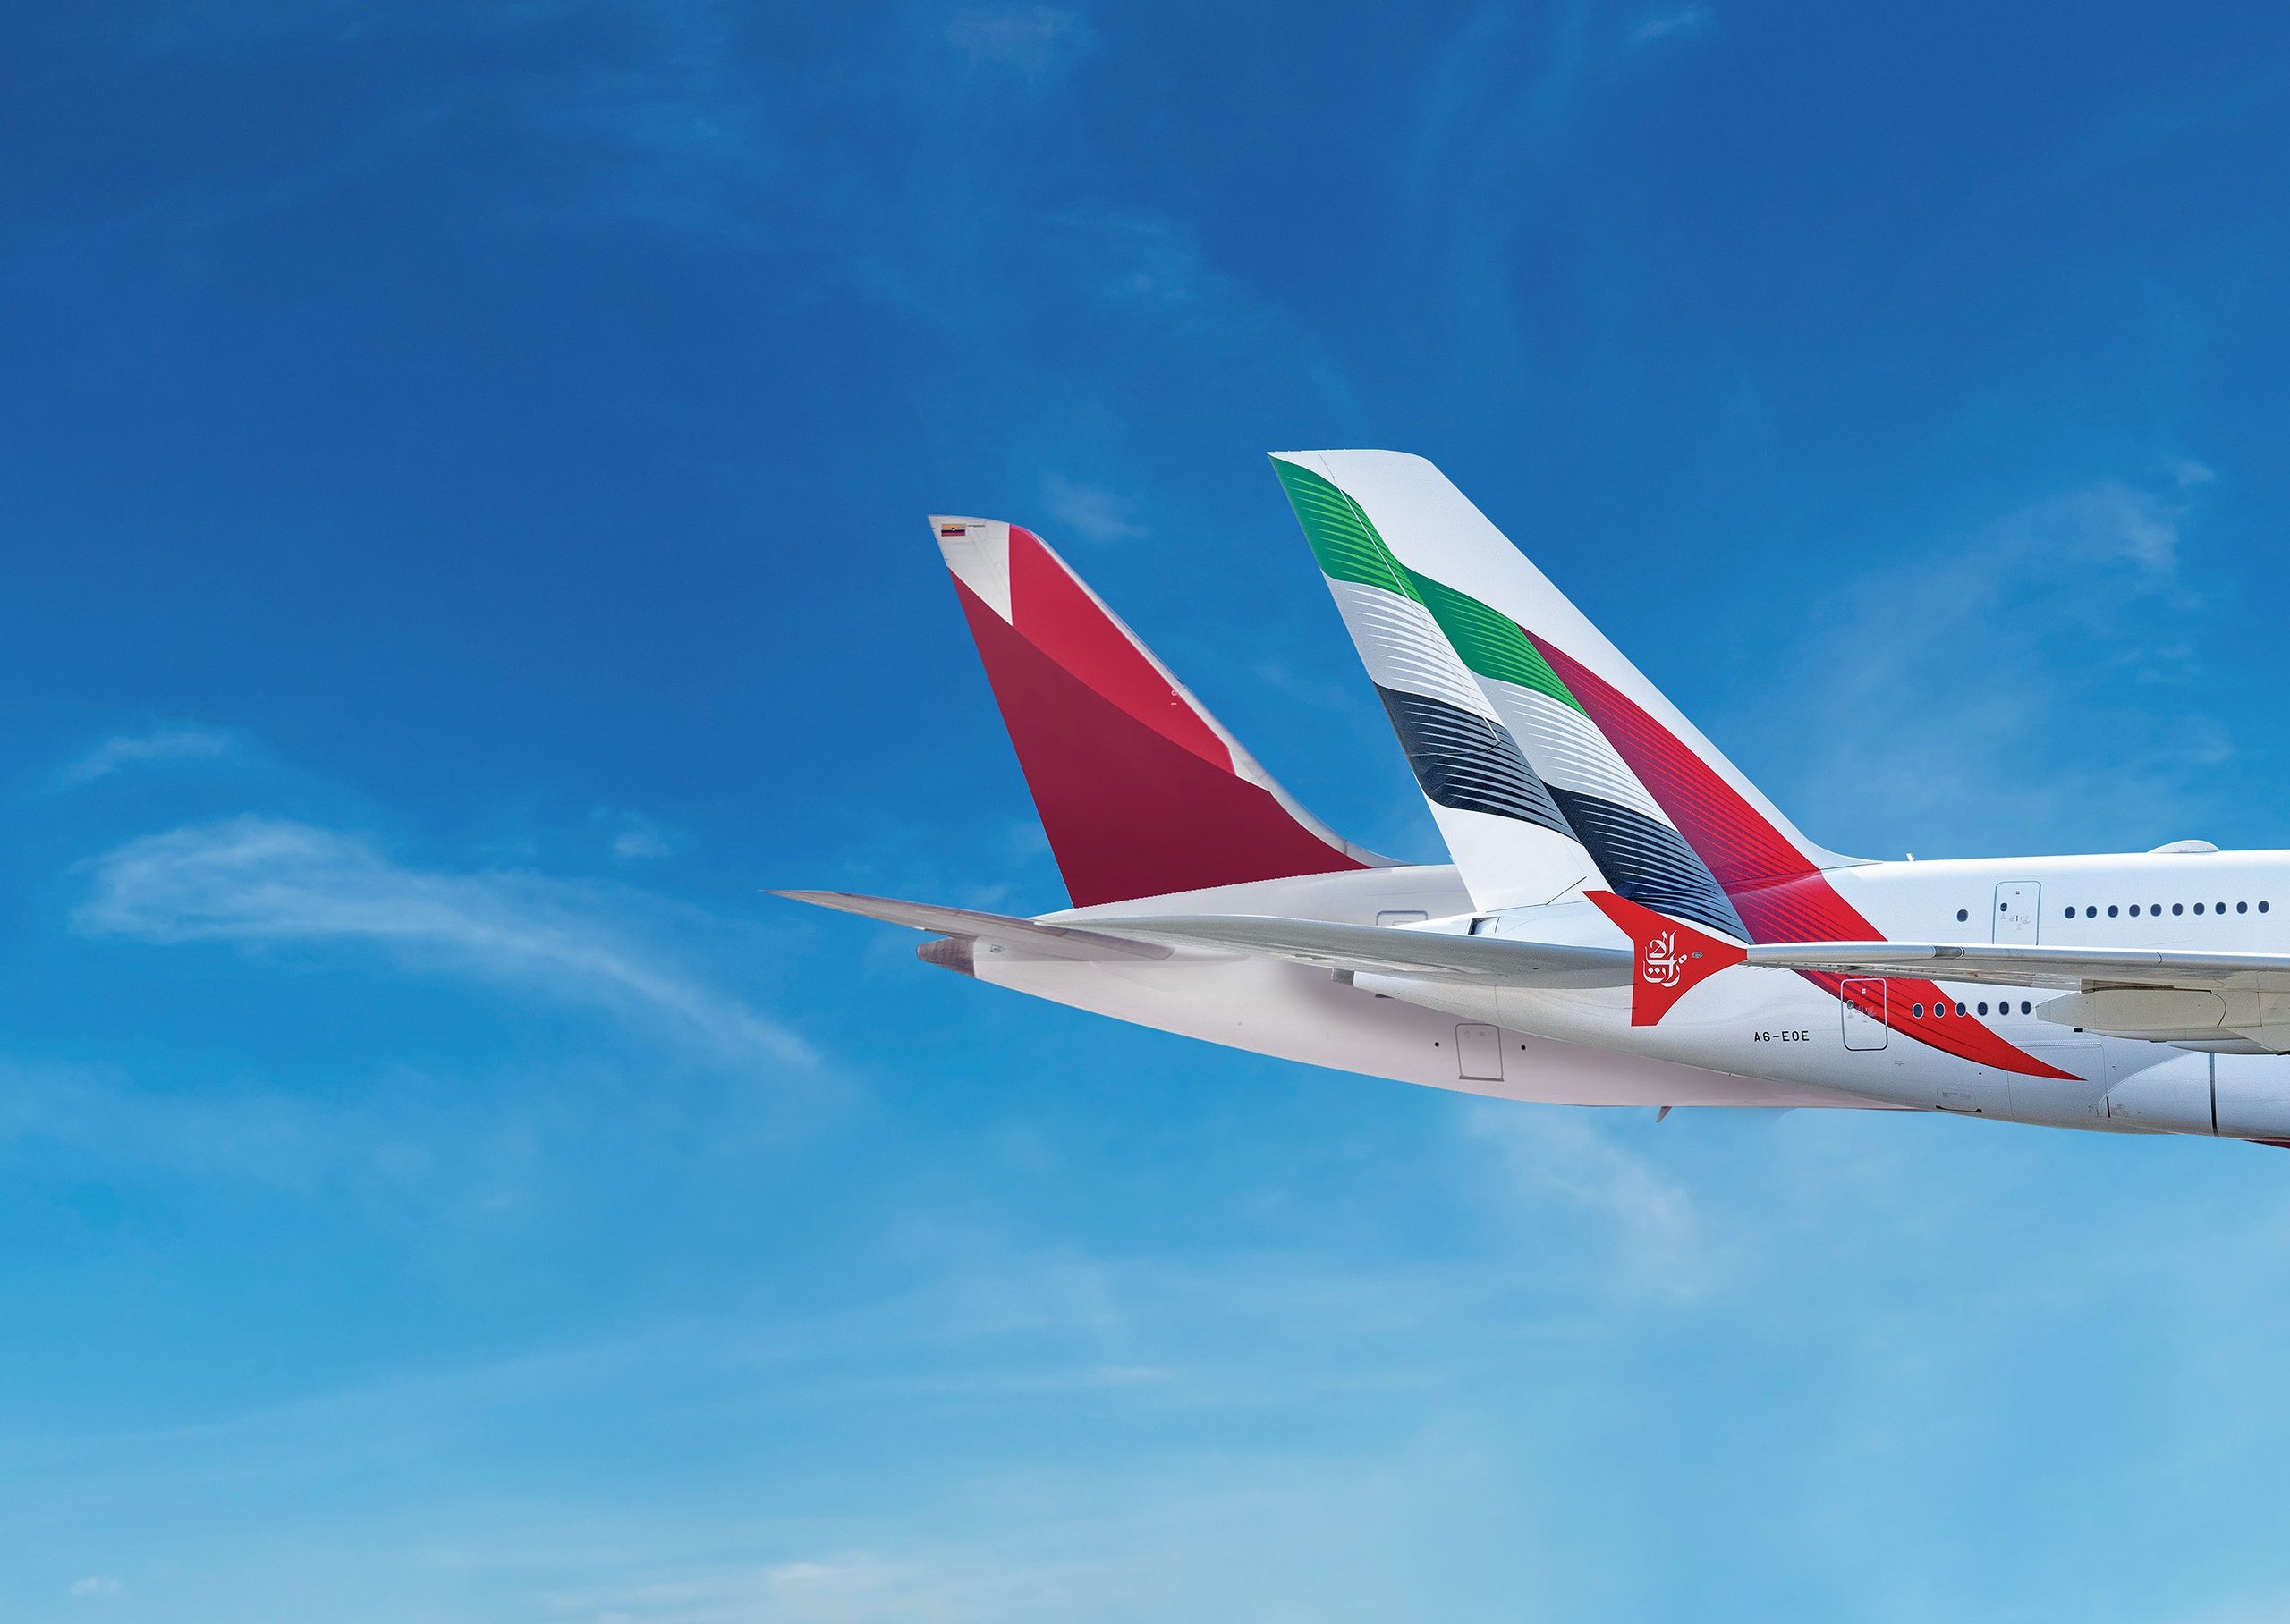 طيران الإمارات تطلق شراكة تبادل الرموز مع أفيانكا عبر بوابات أوروبية